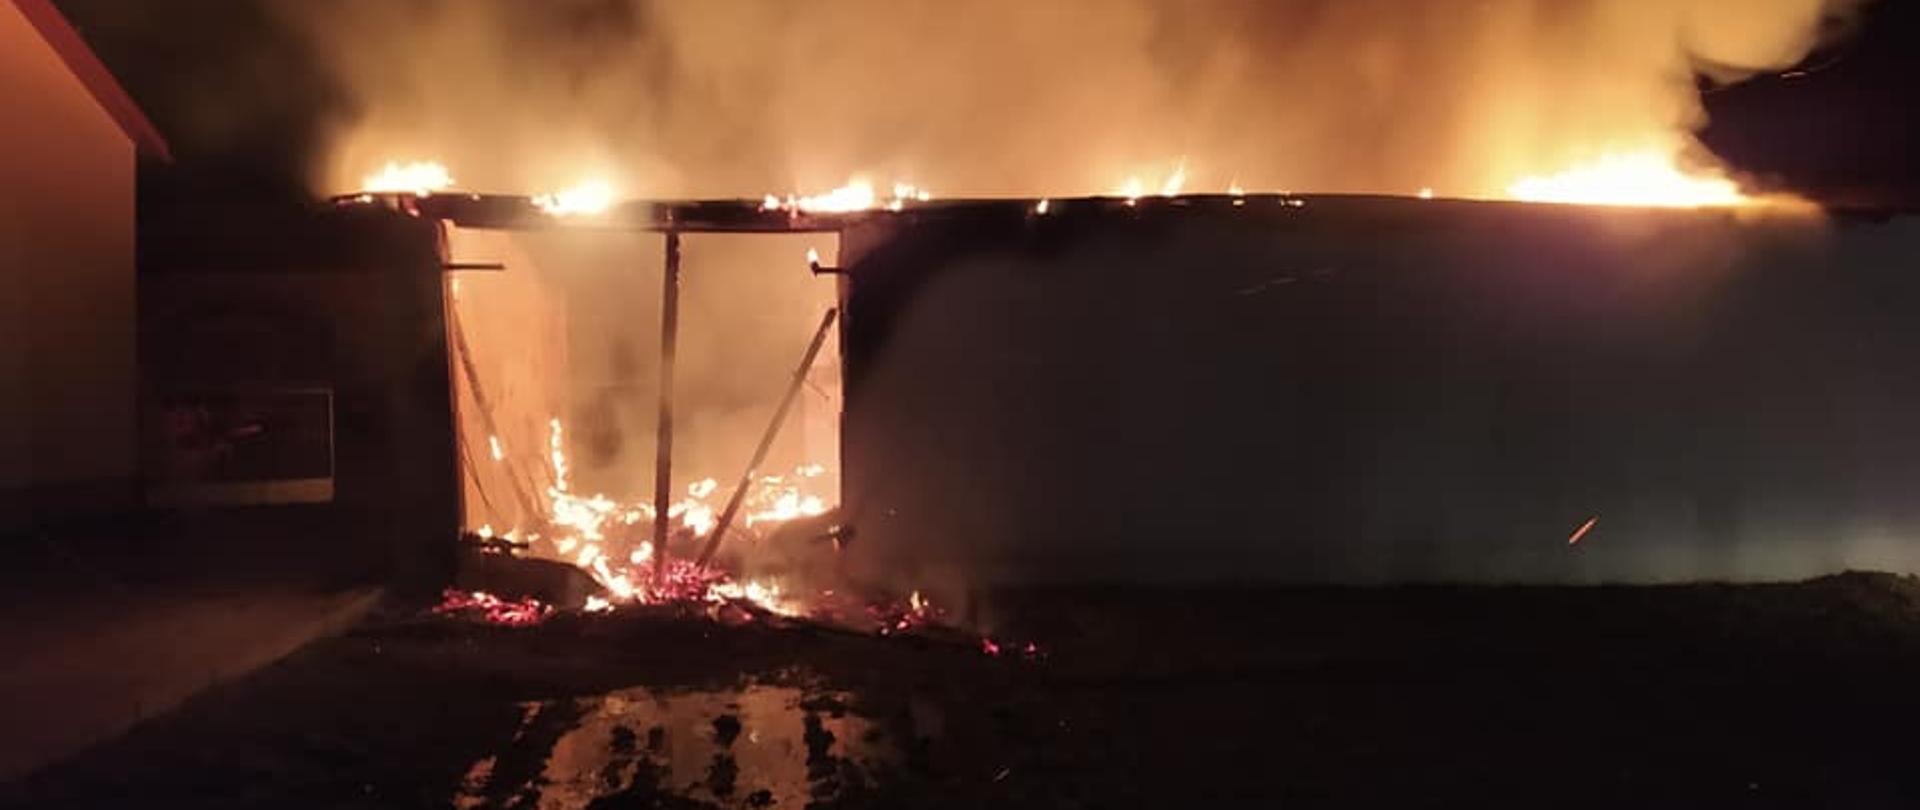 Zdjęcie zostało wykonane nocą, widać na nim płonący budynek, jest dużo ognia i szarego dymu